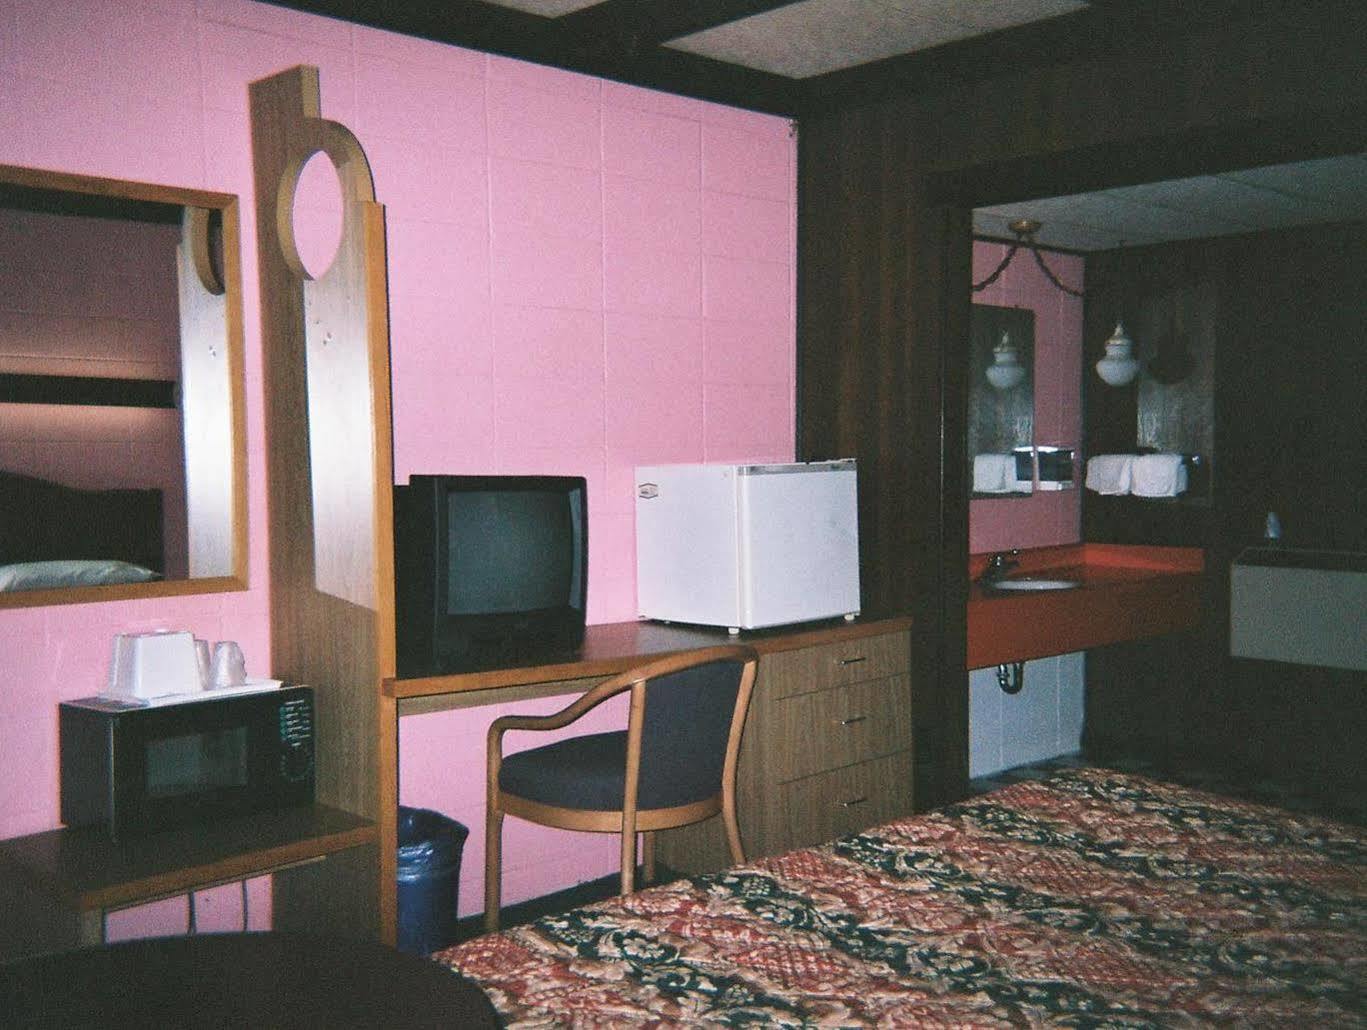 Motel Reedsburg Ngoại thất bức ảnh